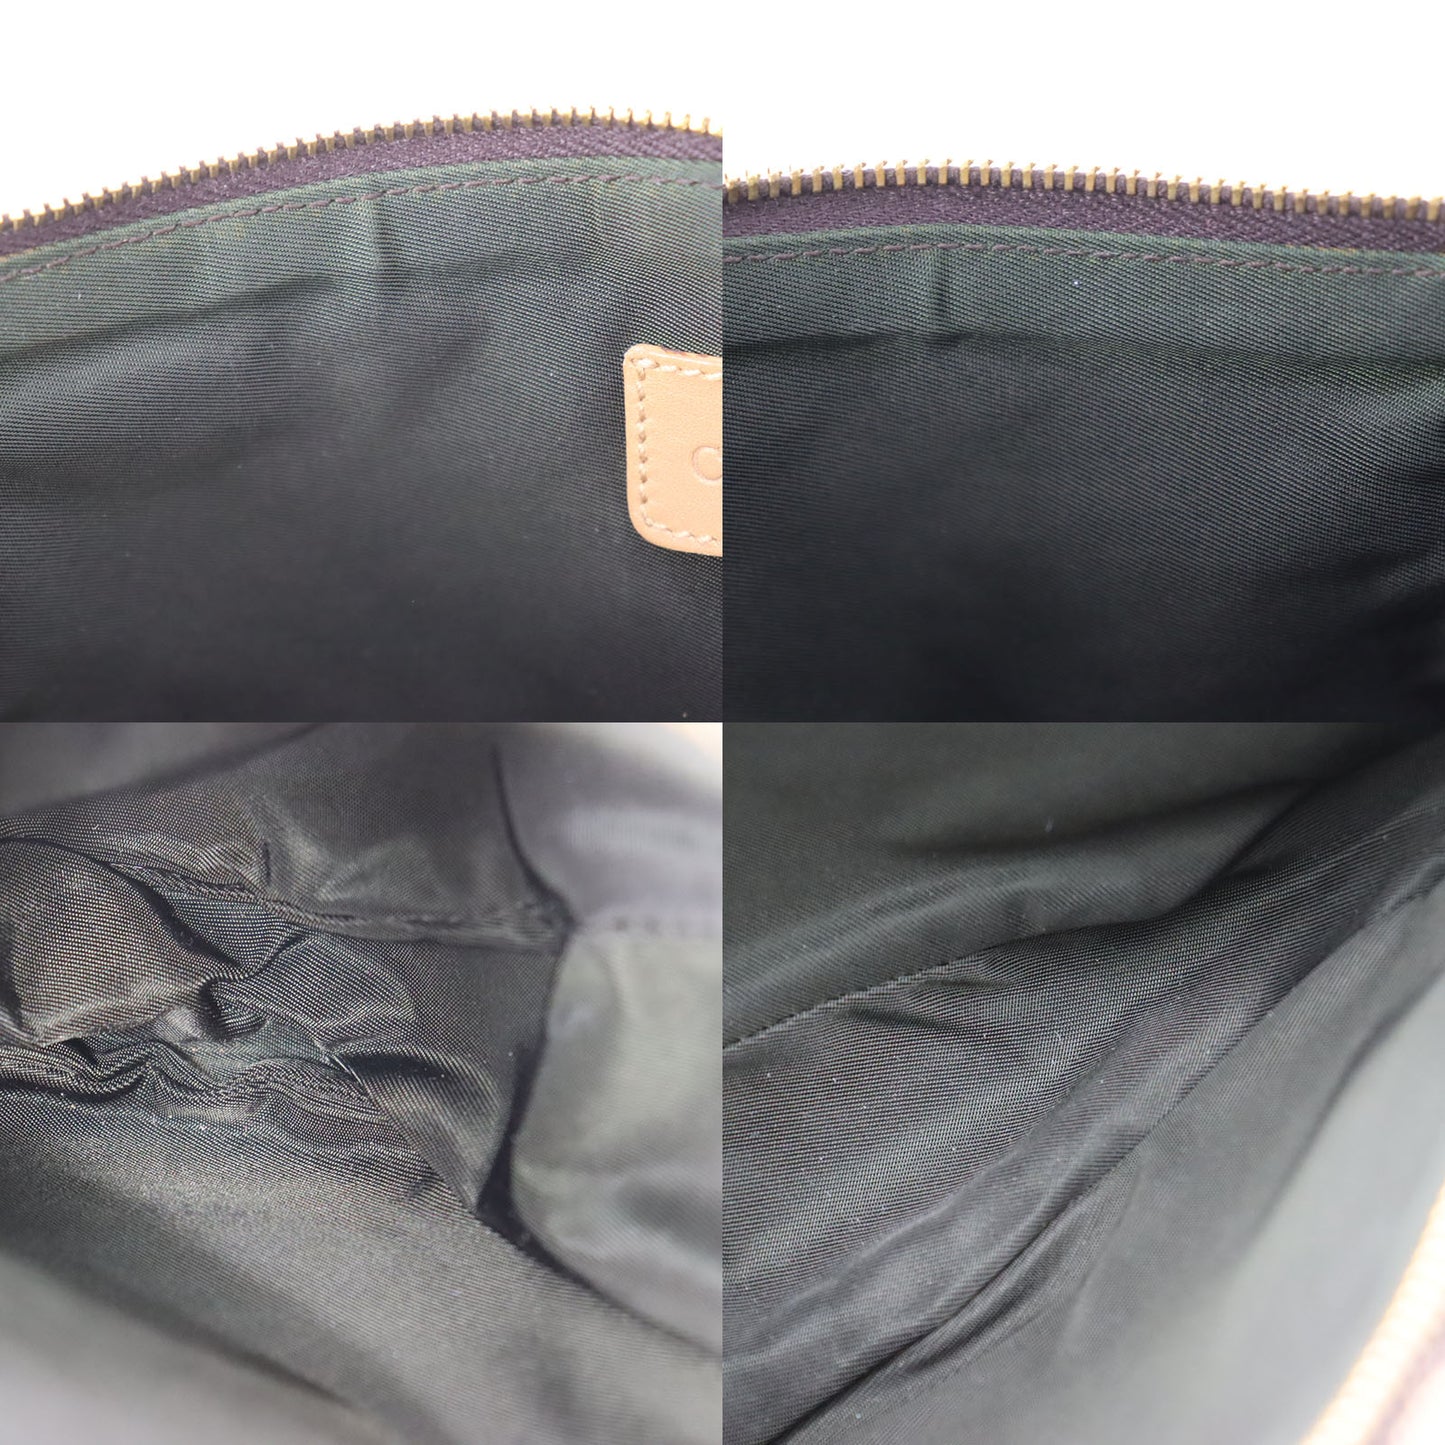 Christian Dior Trotter Saddle Bag Handbag Brown Canvas #CT50